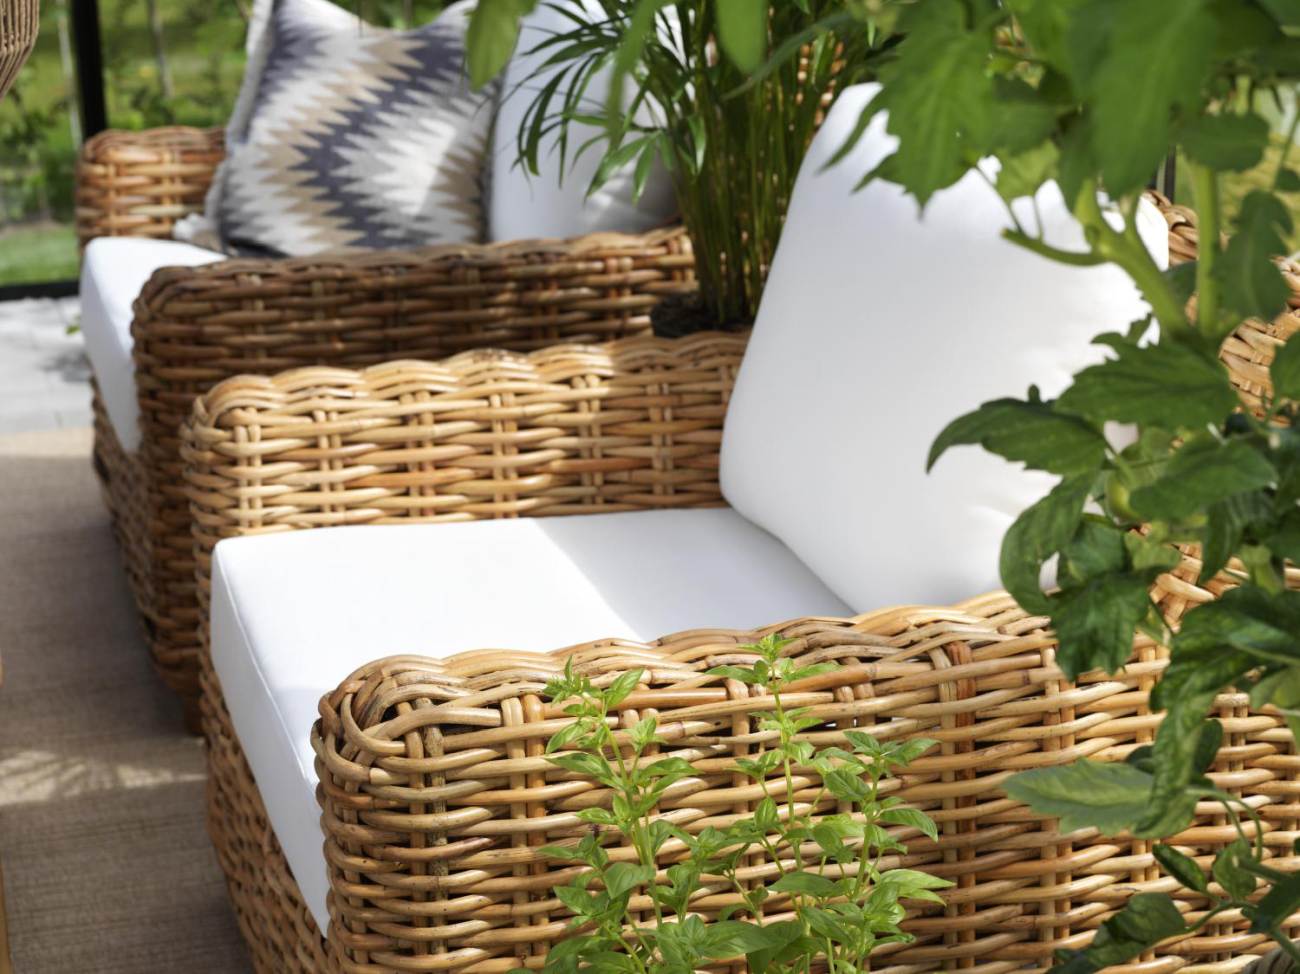 Der Gartensessel Rossvik überzeugt mit seinem modernen Design. Gefertigt wurde er aus Stoff, welcher einen weißen Farbton besitzt. Das Gestell ist aus Rattan und hat eine braune Farbe. Die Sitzhöhe des Sessels beträgt 47 cm.